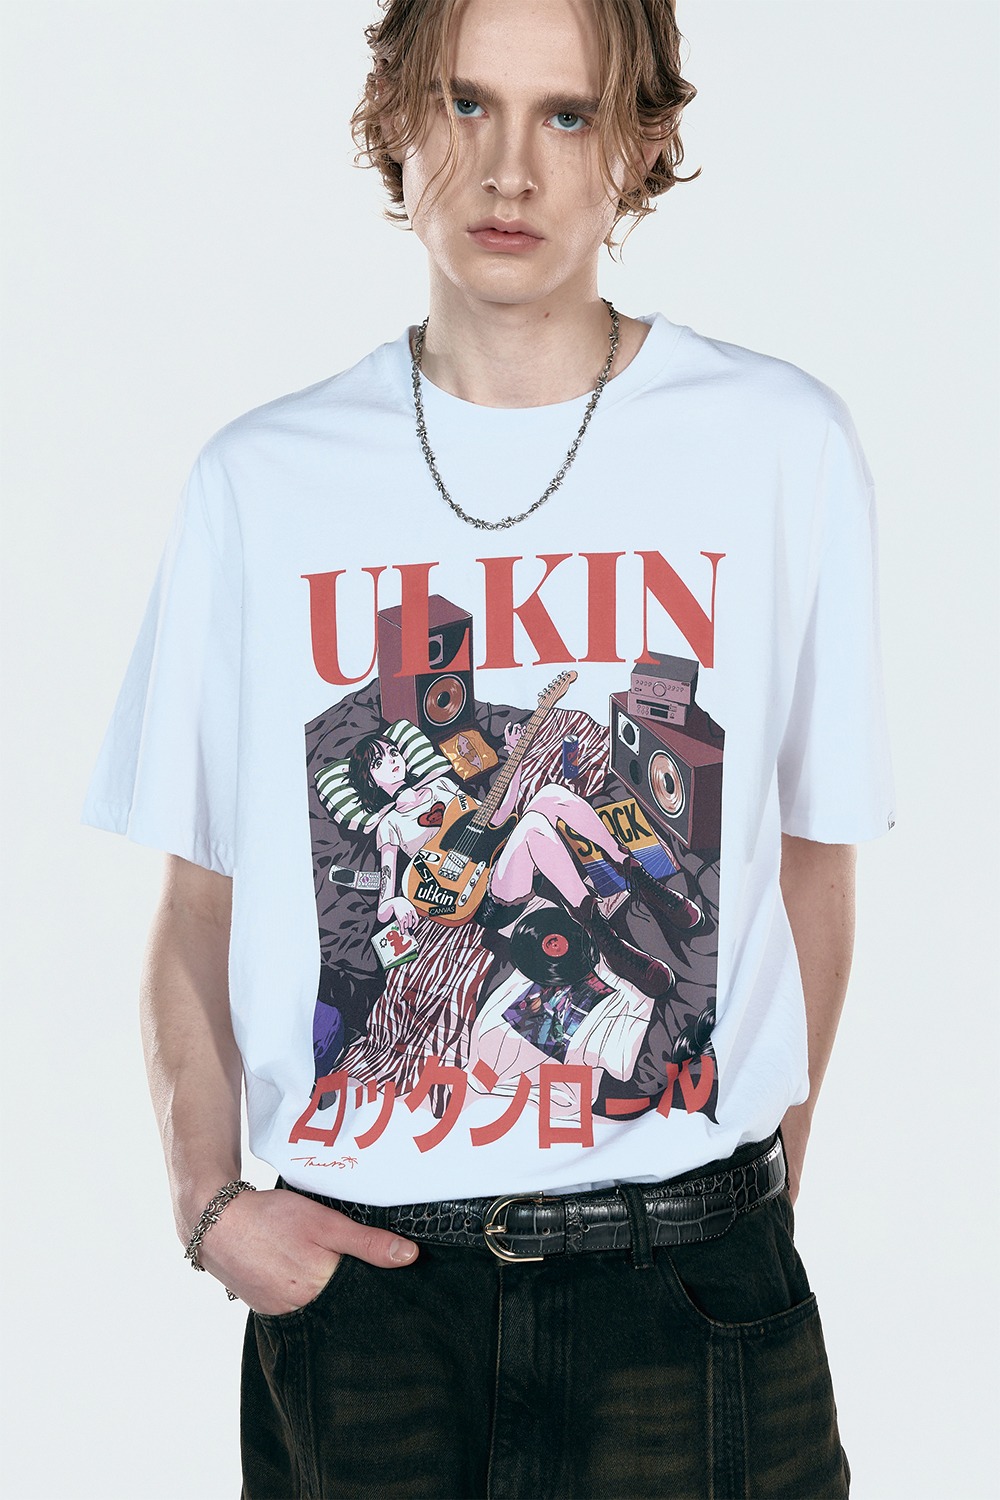 ULKIN X TREE 13 Artist T-shirt_Rock N Roll_White